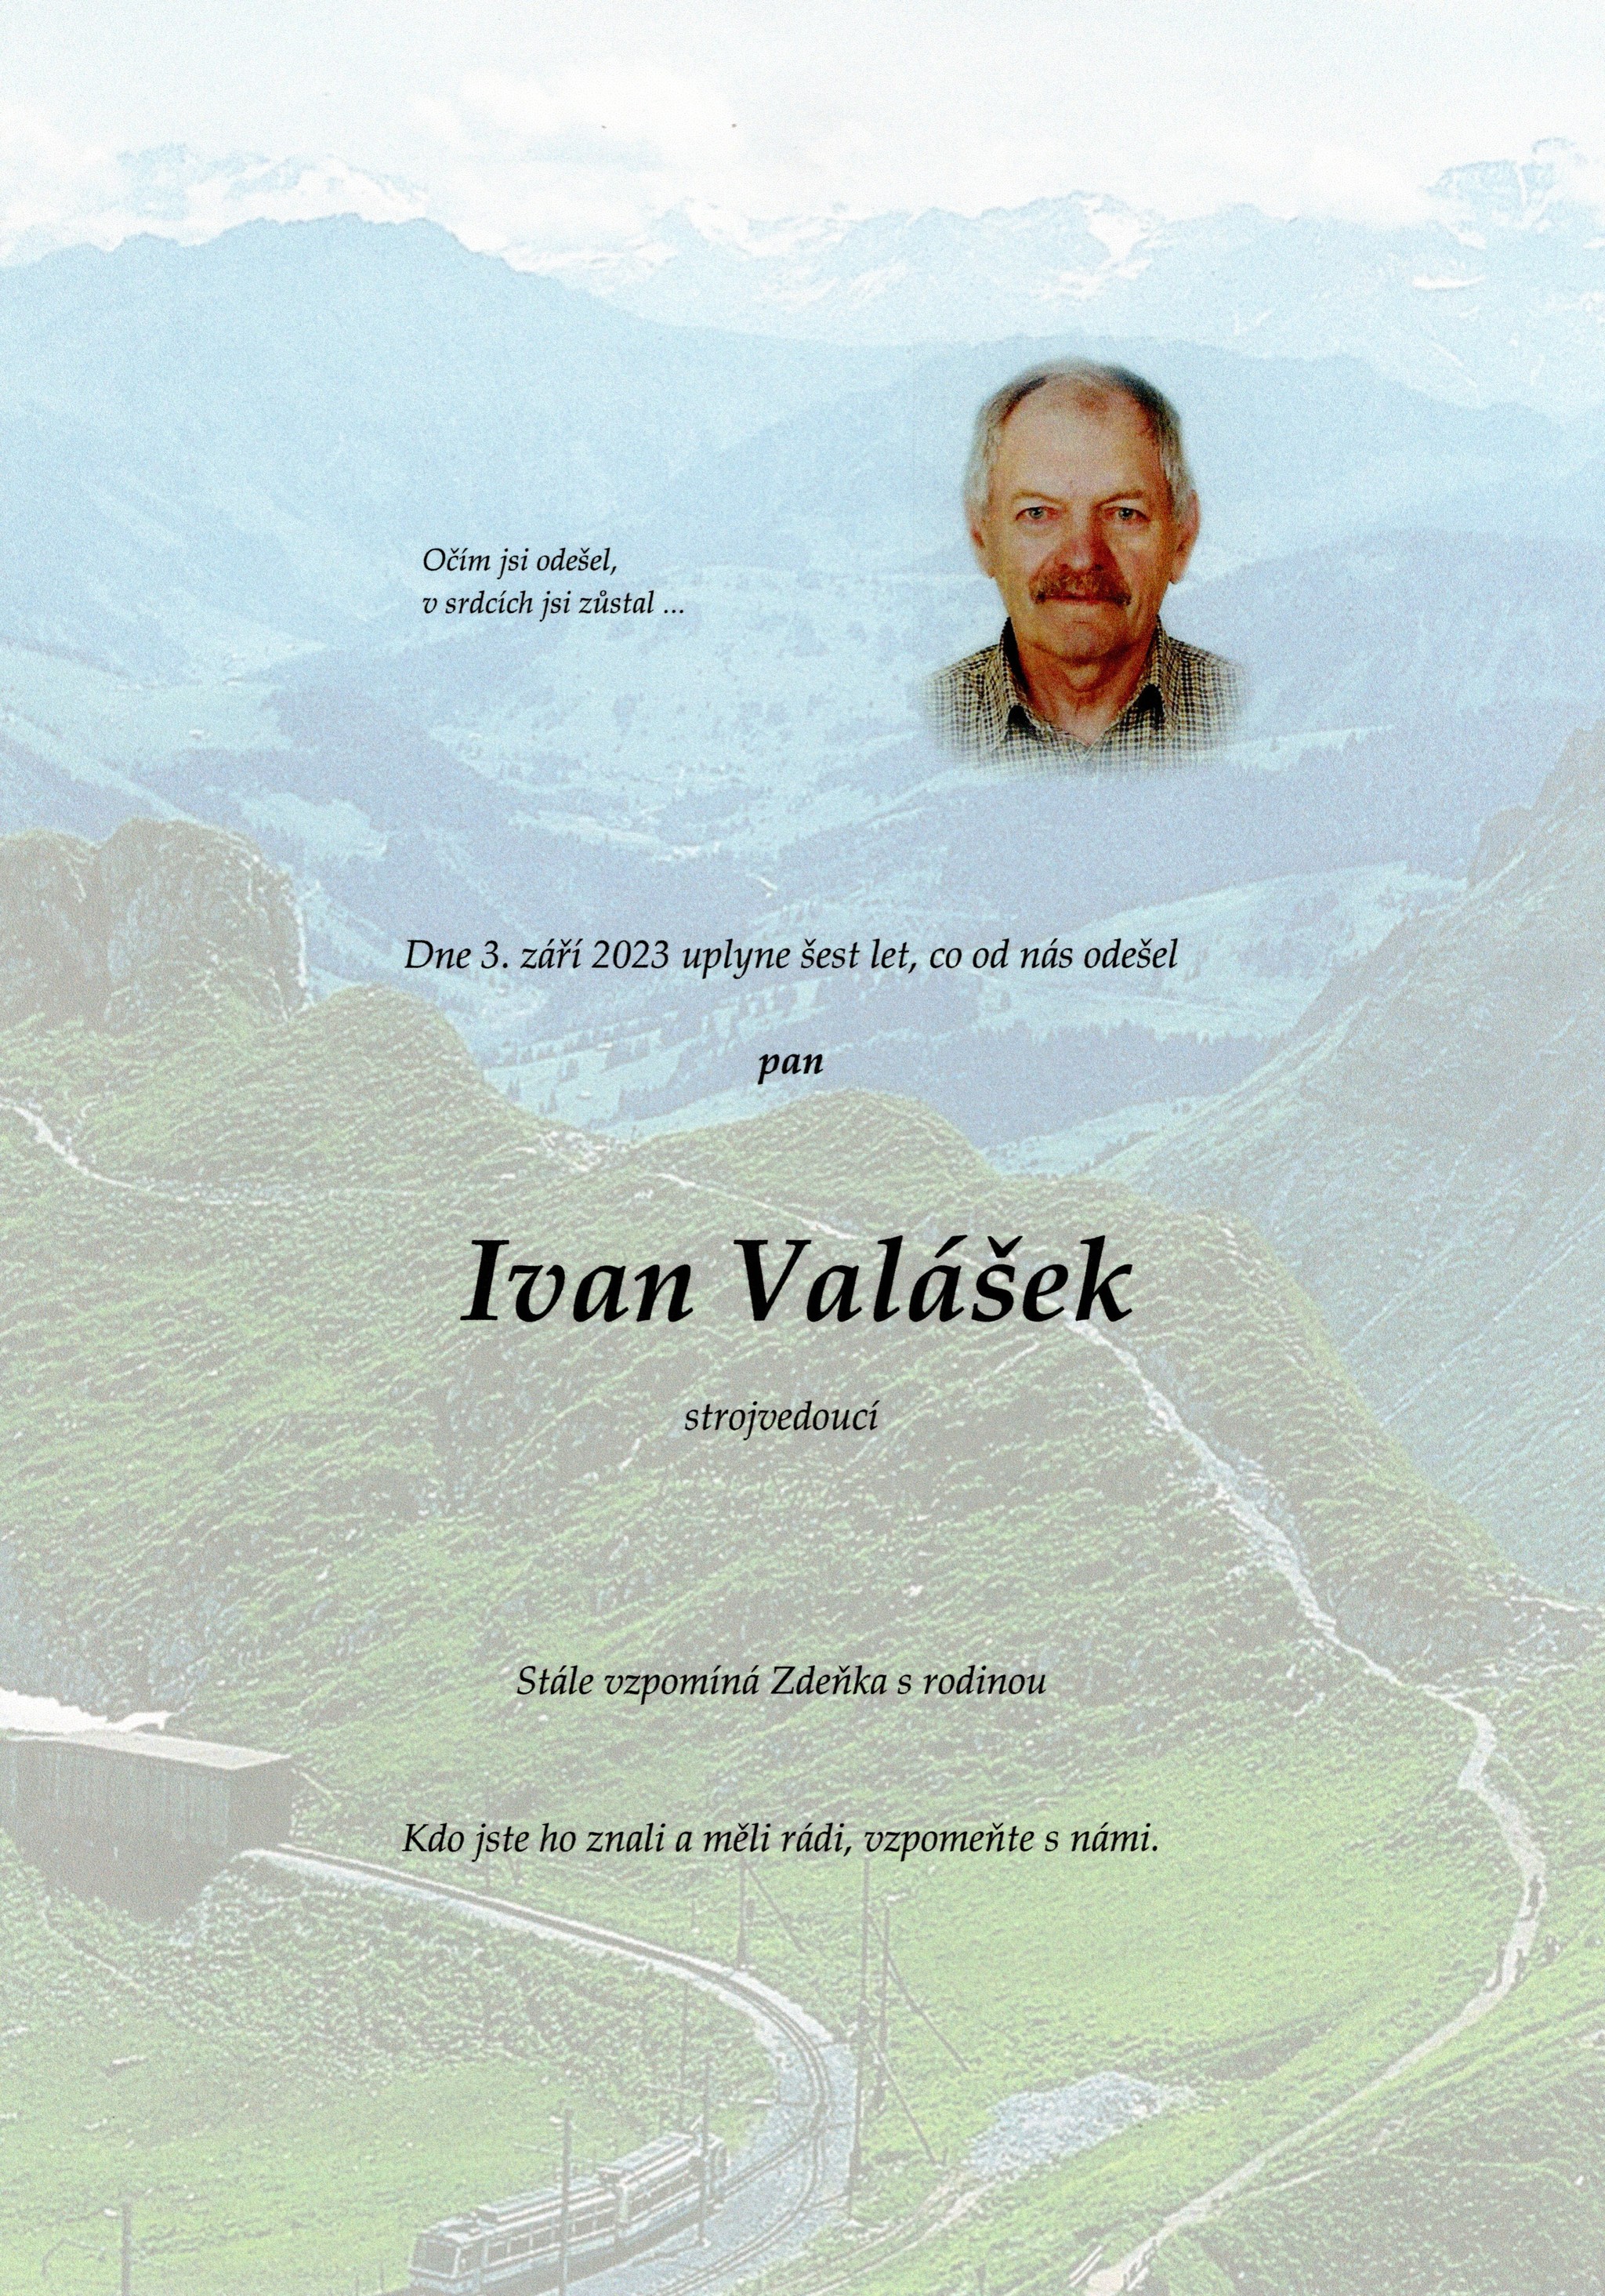 Ivan Valášek